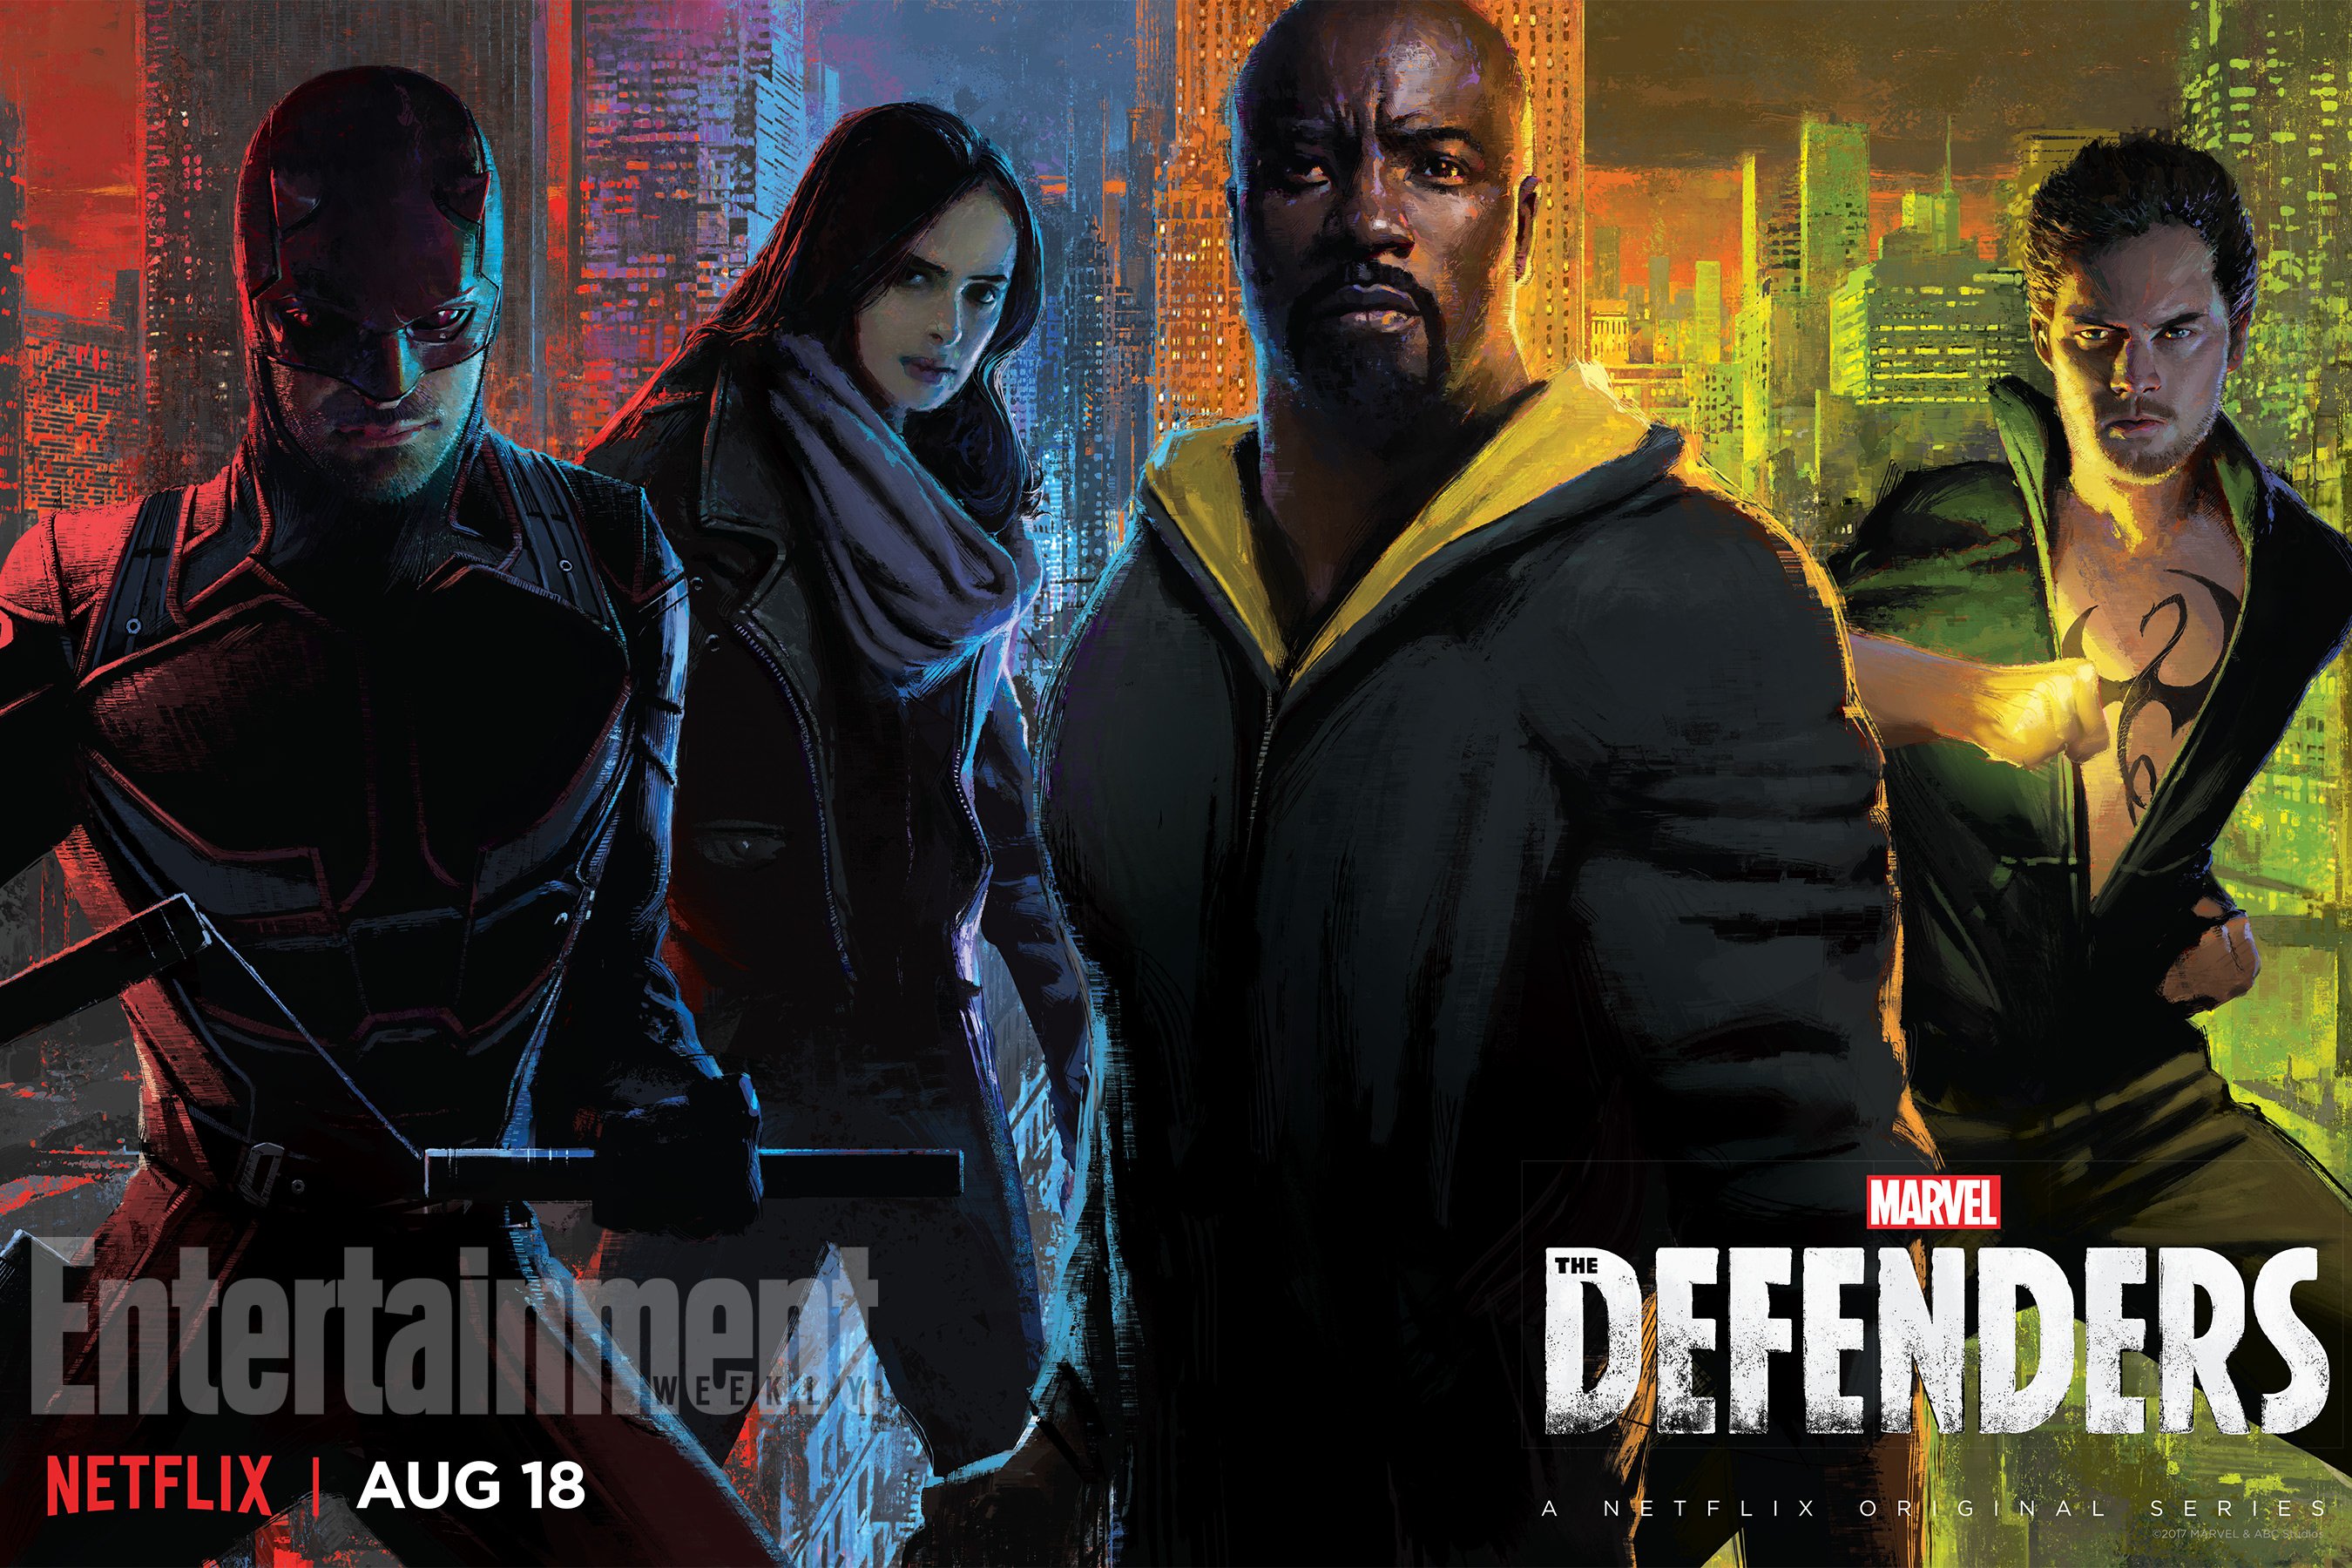 Netflix divulga data de estreia de Punho de Ferro, nova série da Marvel 